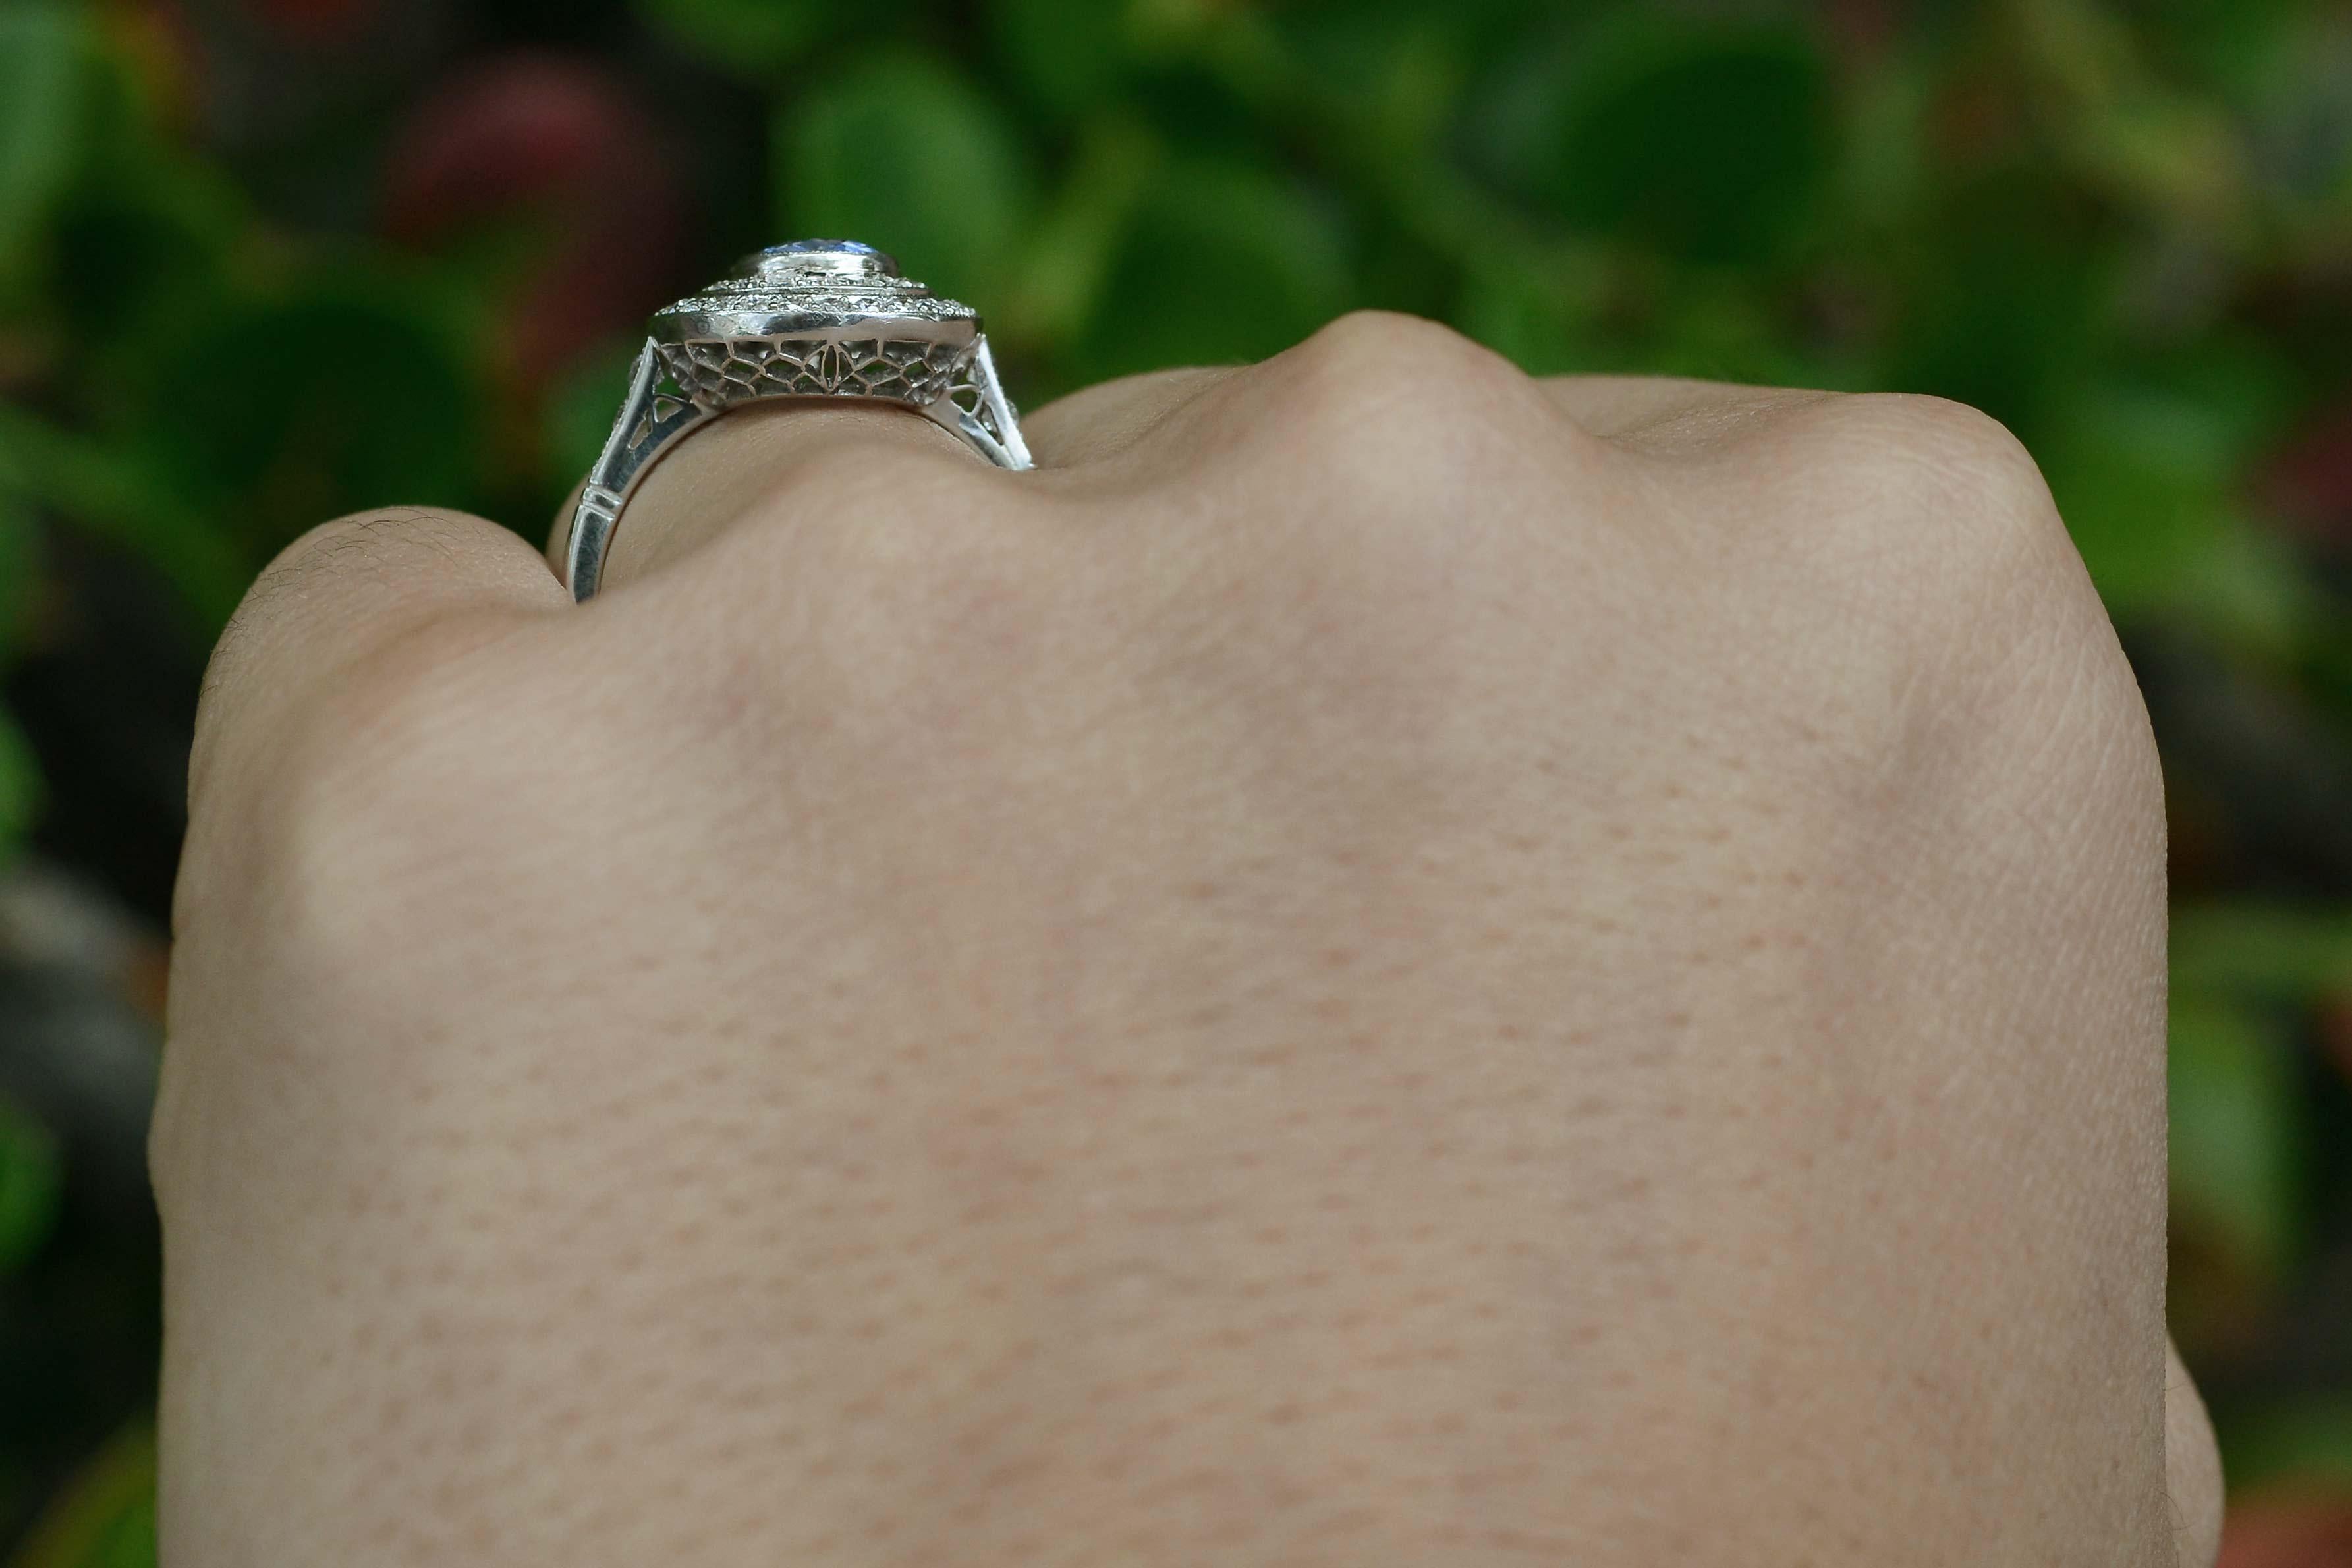 cornflower sapphire engagement ring